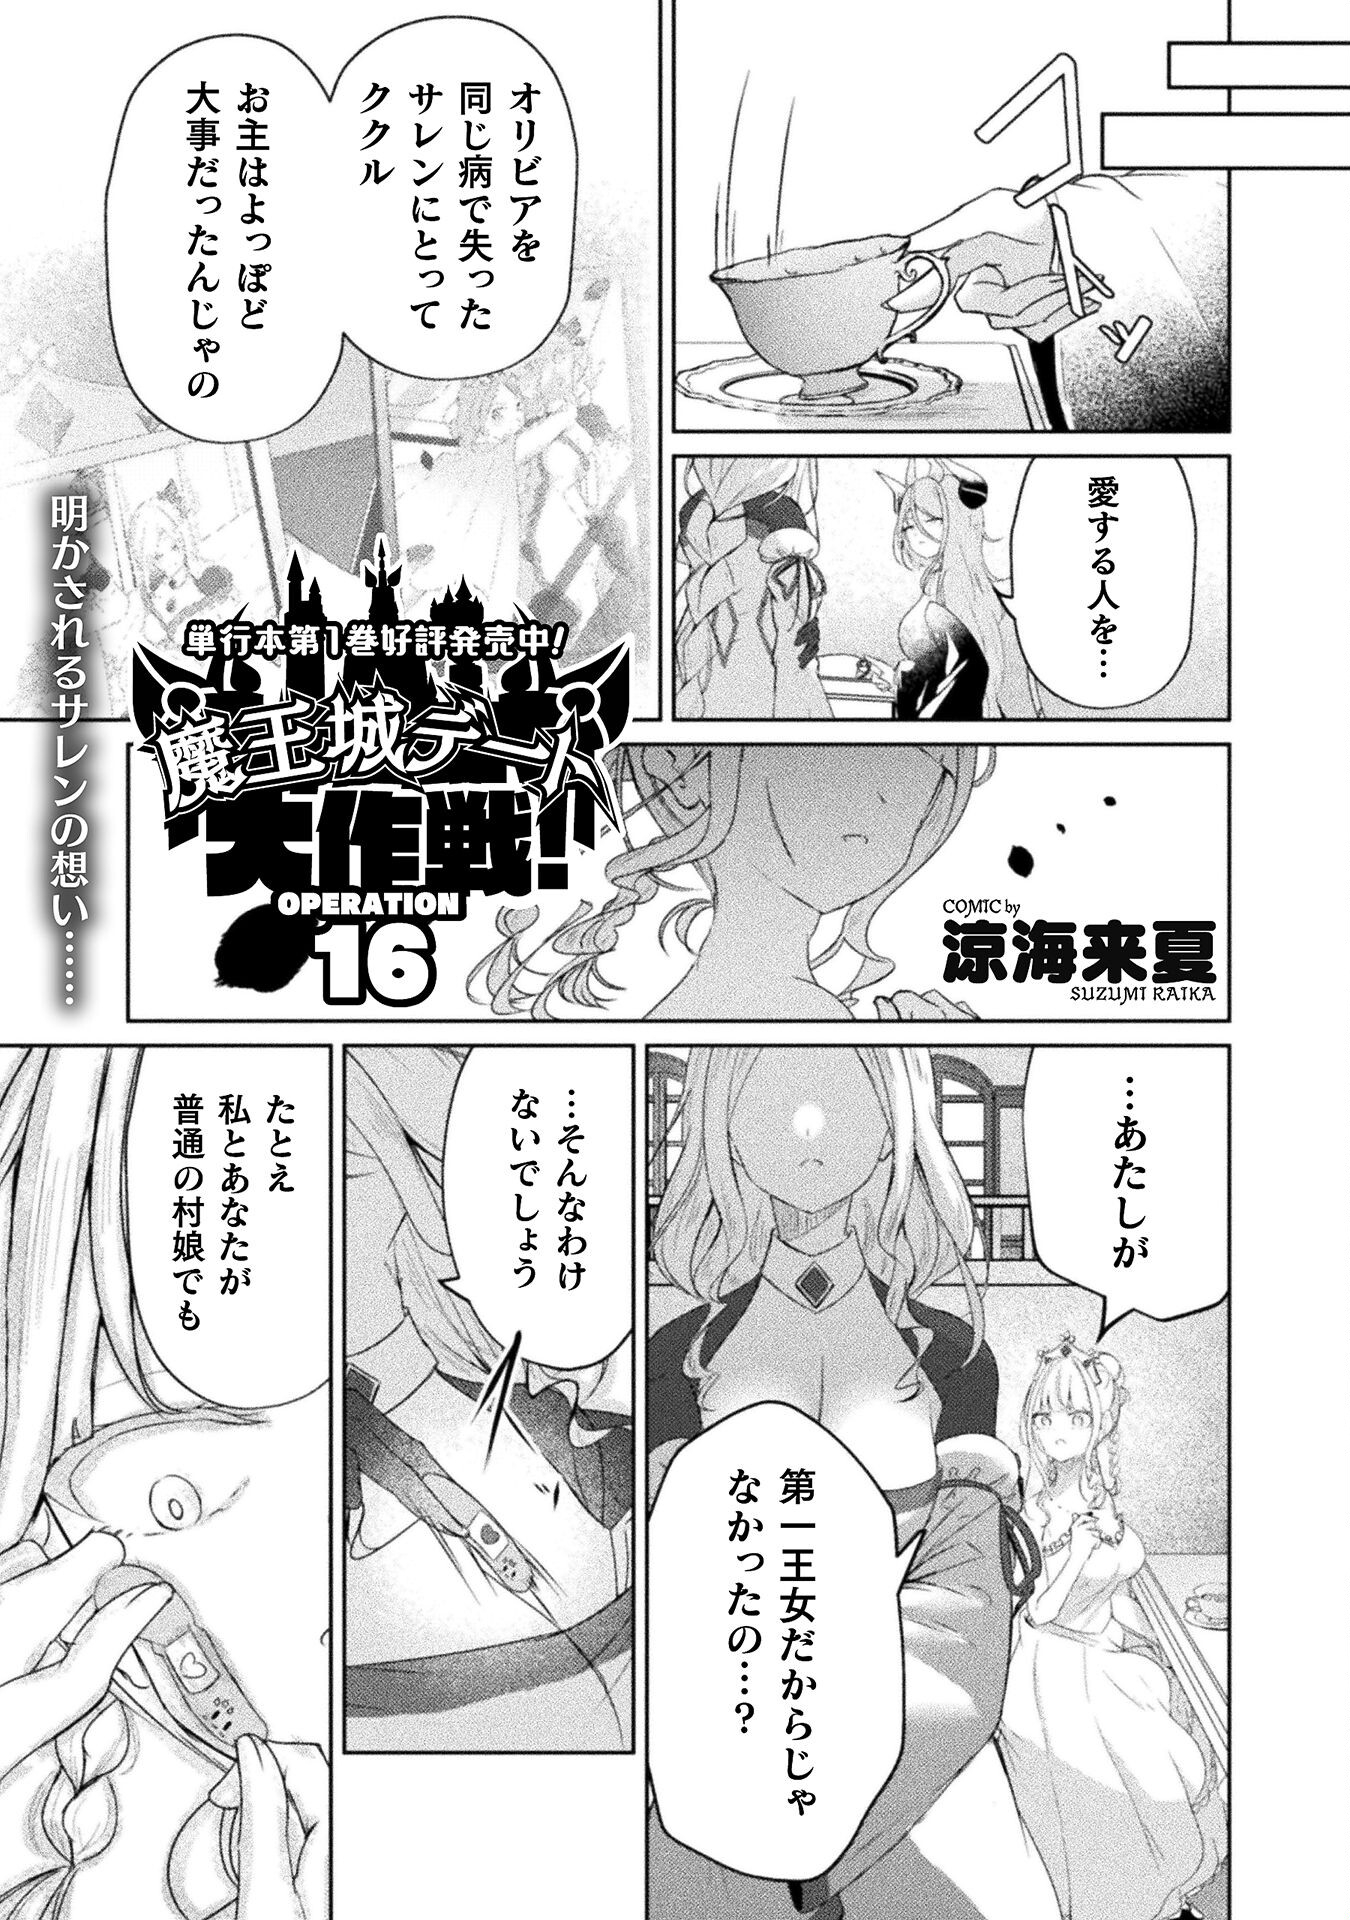 Maou Jou Date Daisakusen! - Chapter 16 - Page 1